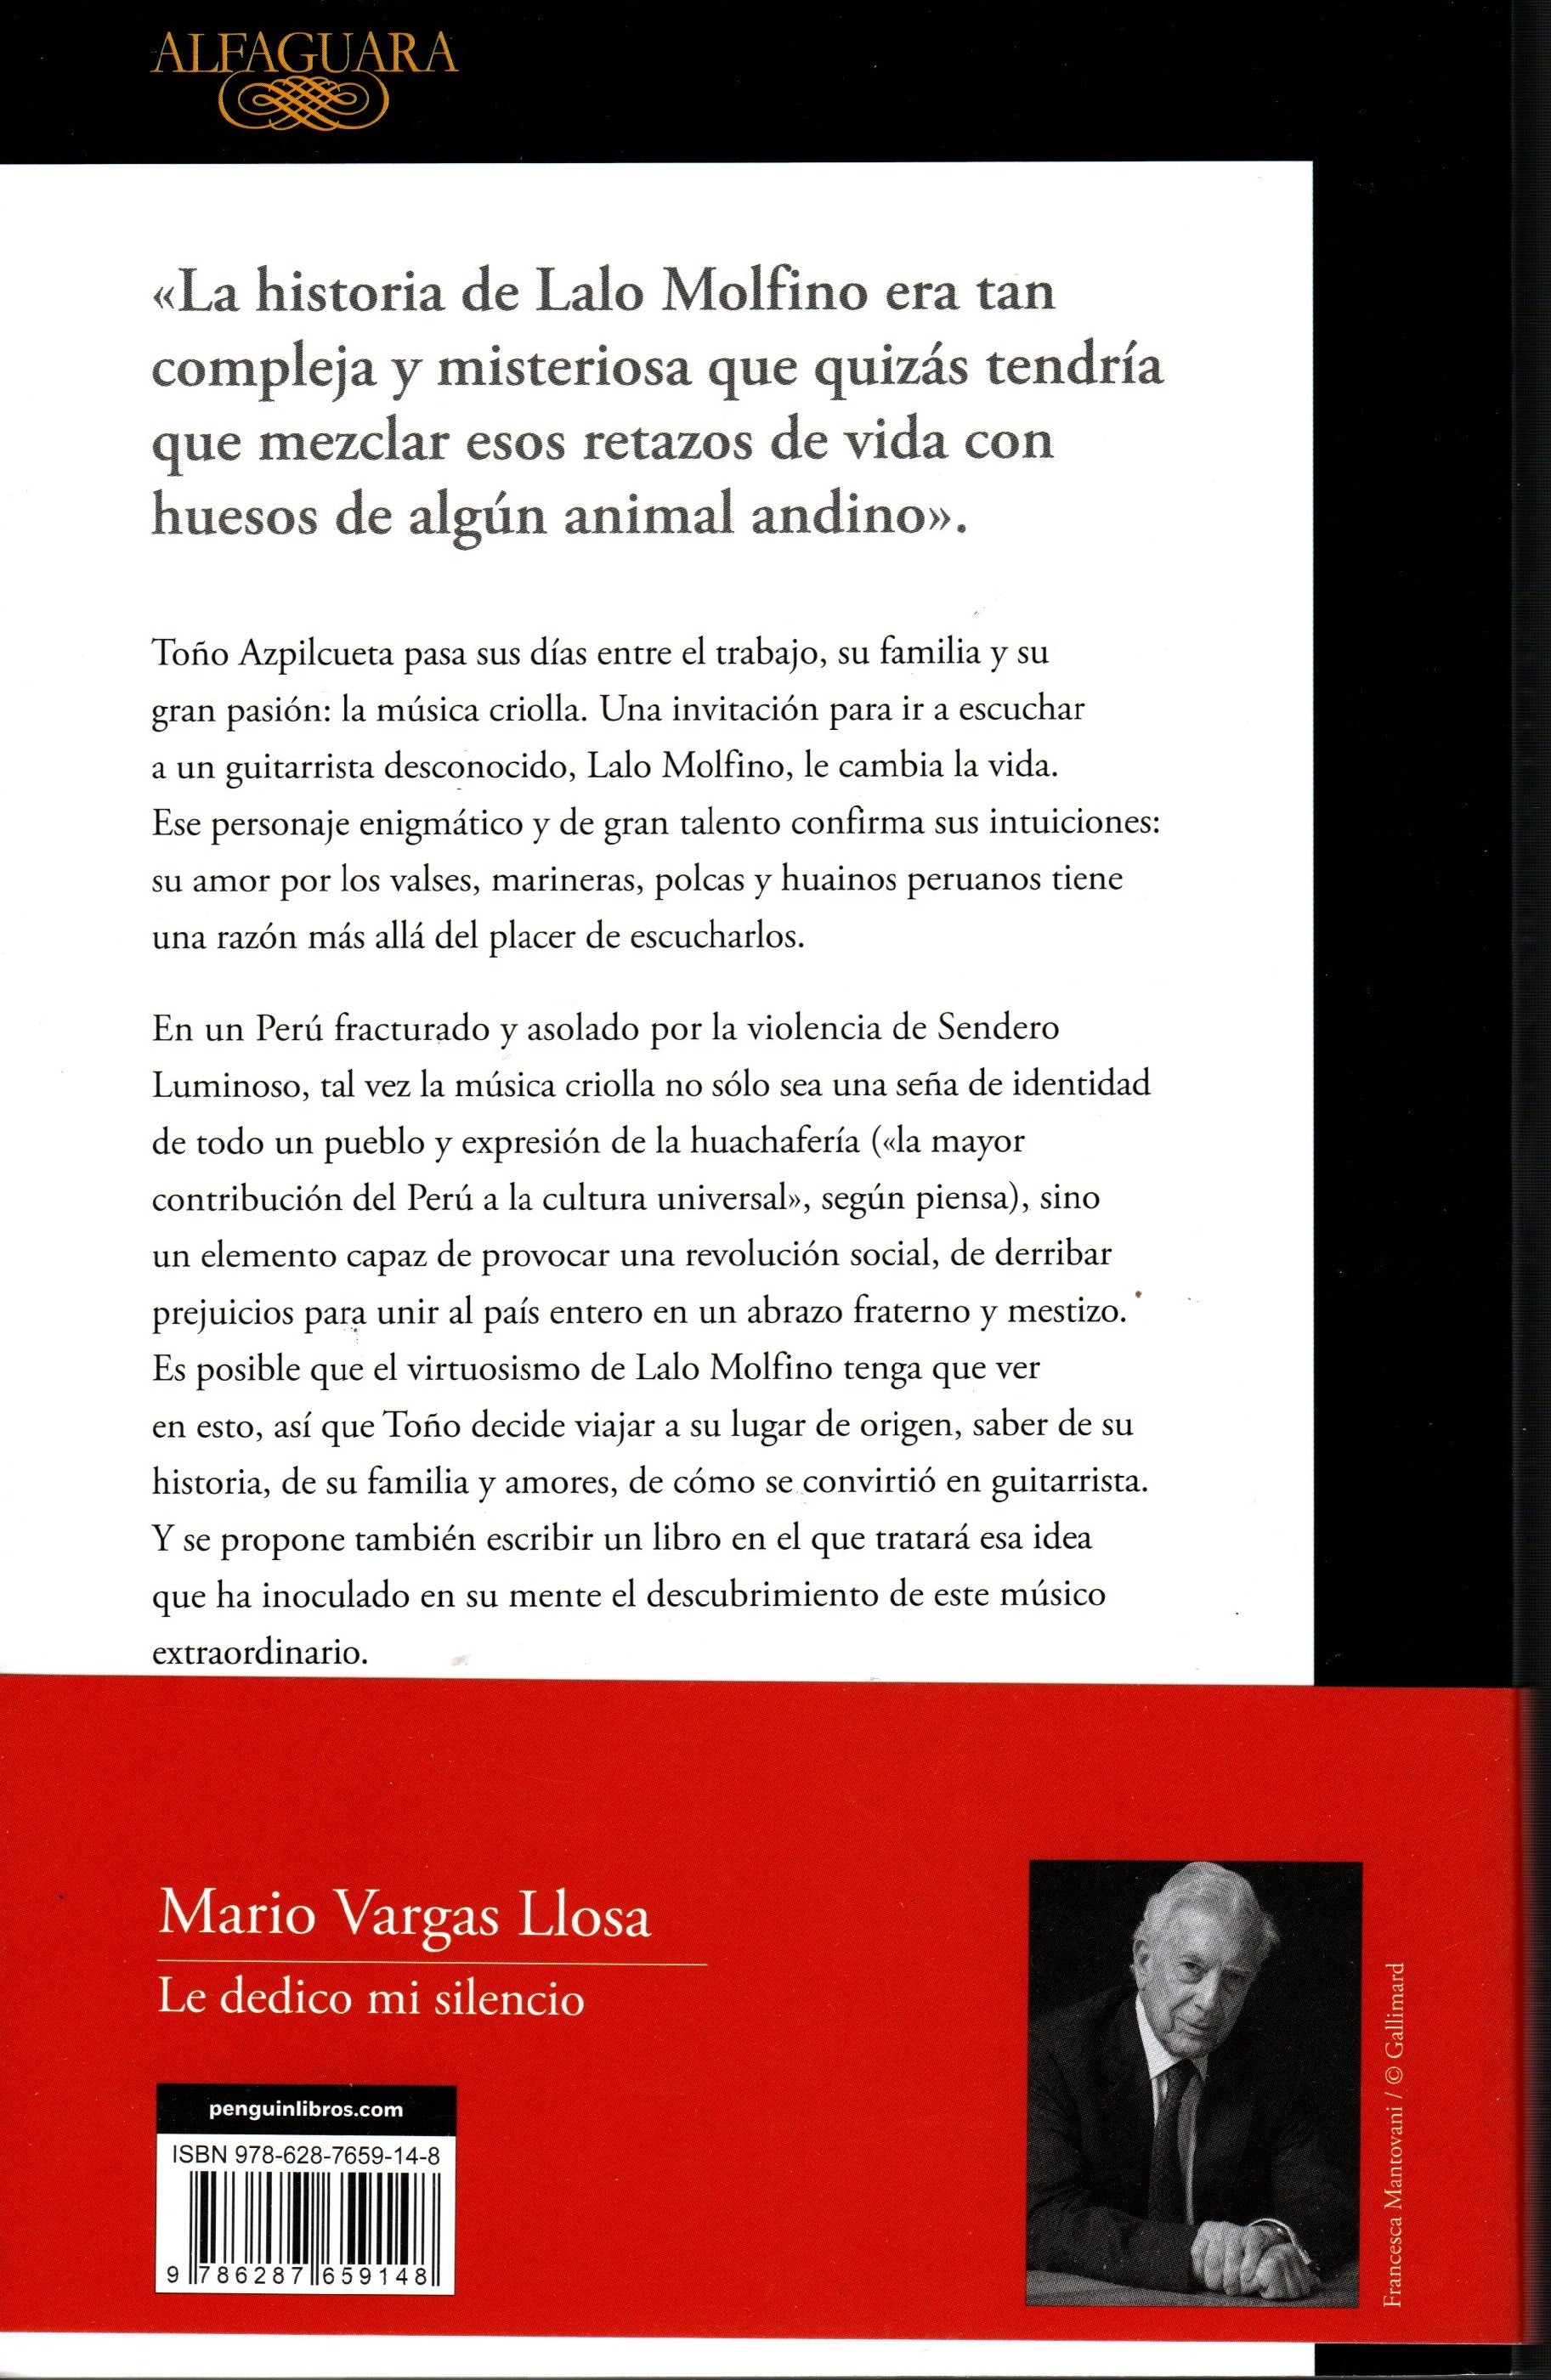 Libro Mario Vargas Llosa - Le dedico mi silencio